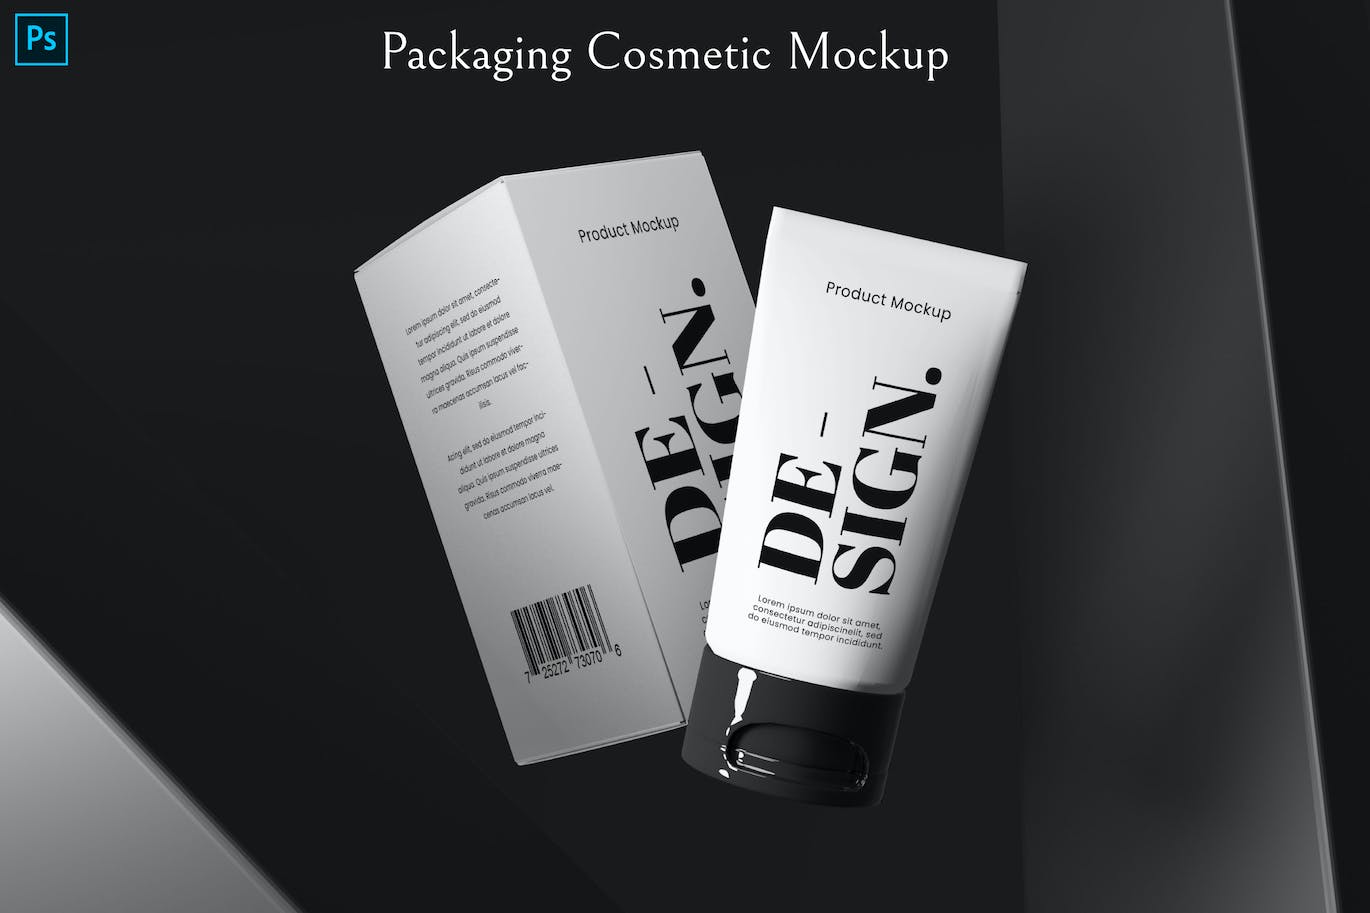 化妆品包装设计展示样机图psd模板 Packaging Cosmetic Mockup 样机素材 第1张